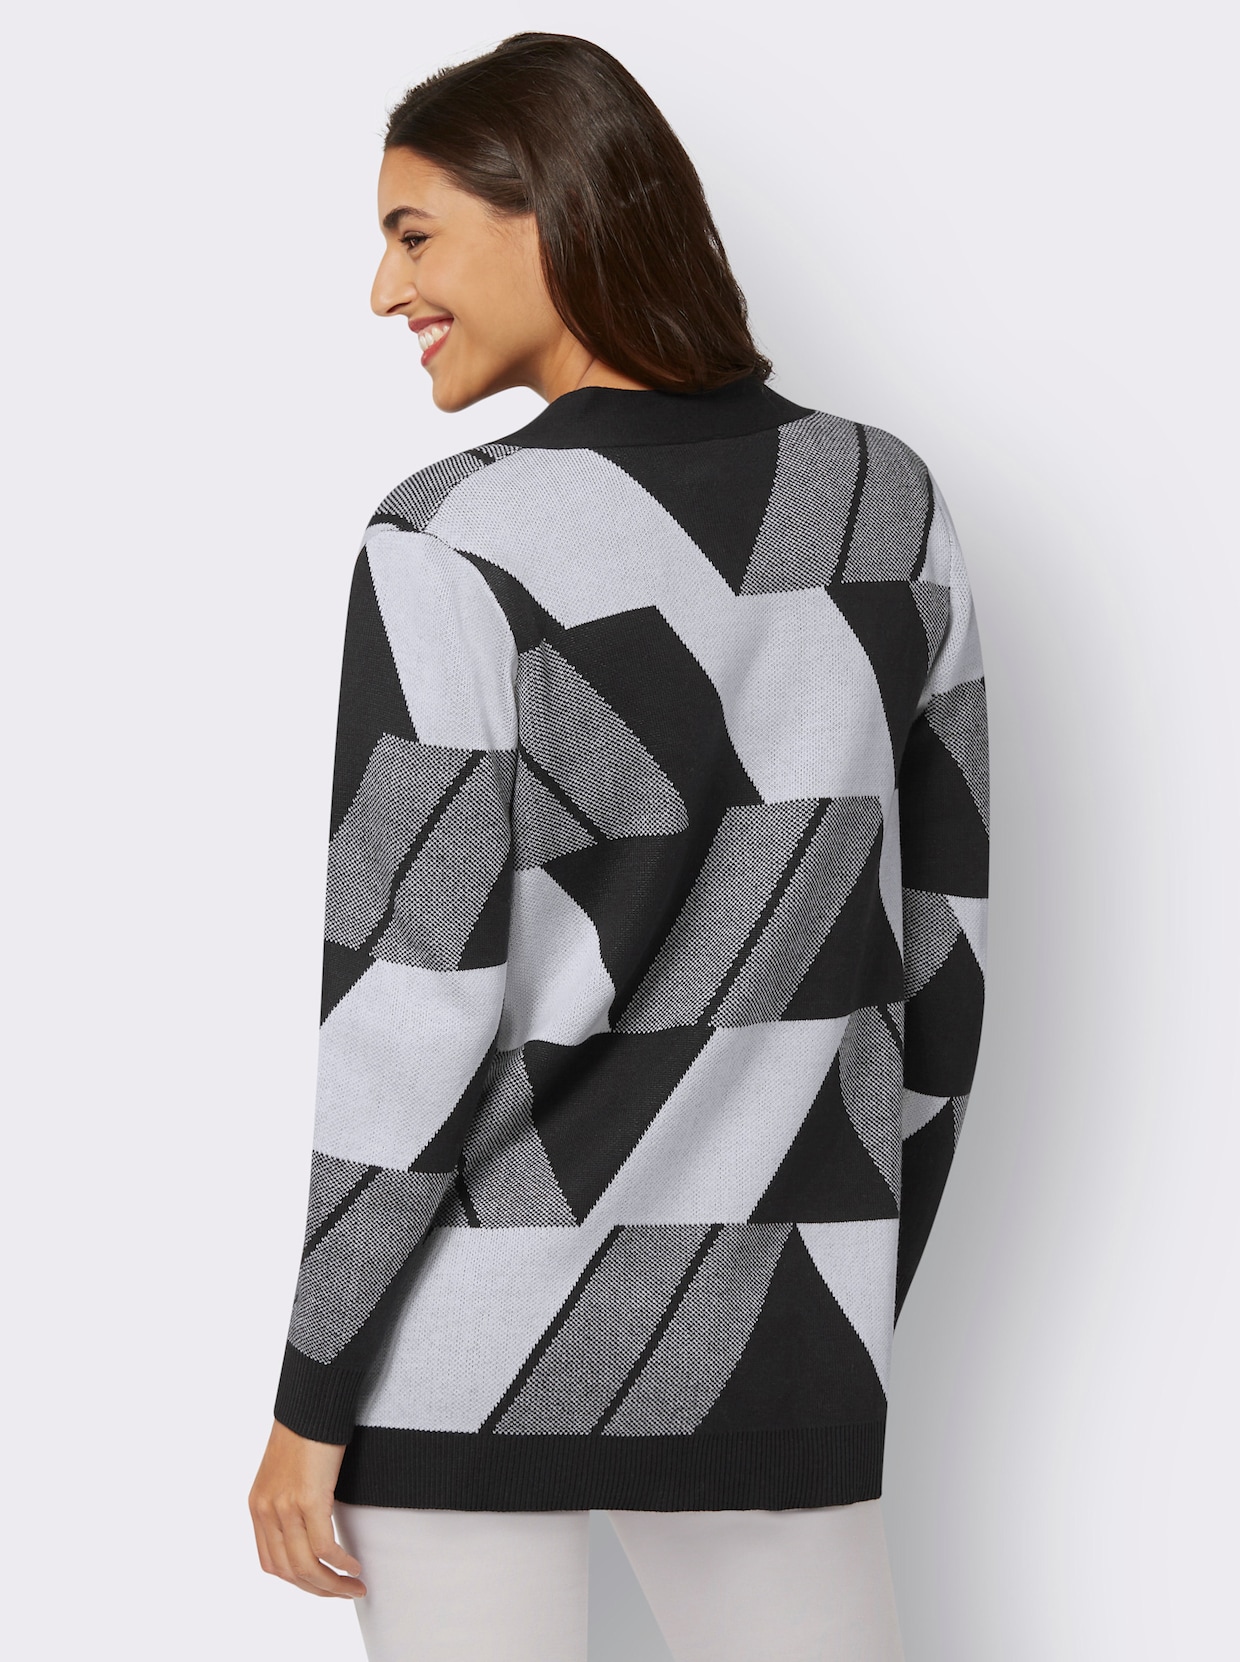 Dlhý pletený sveter - Čierno-biely vzor